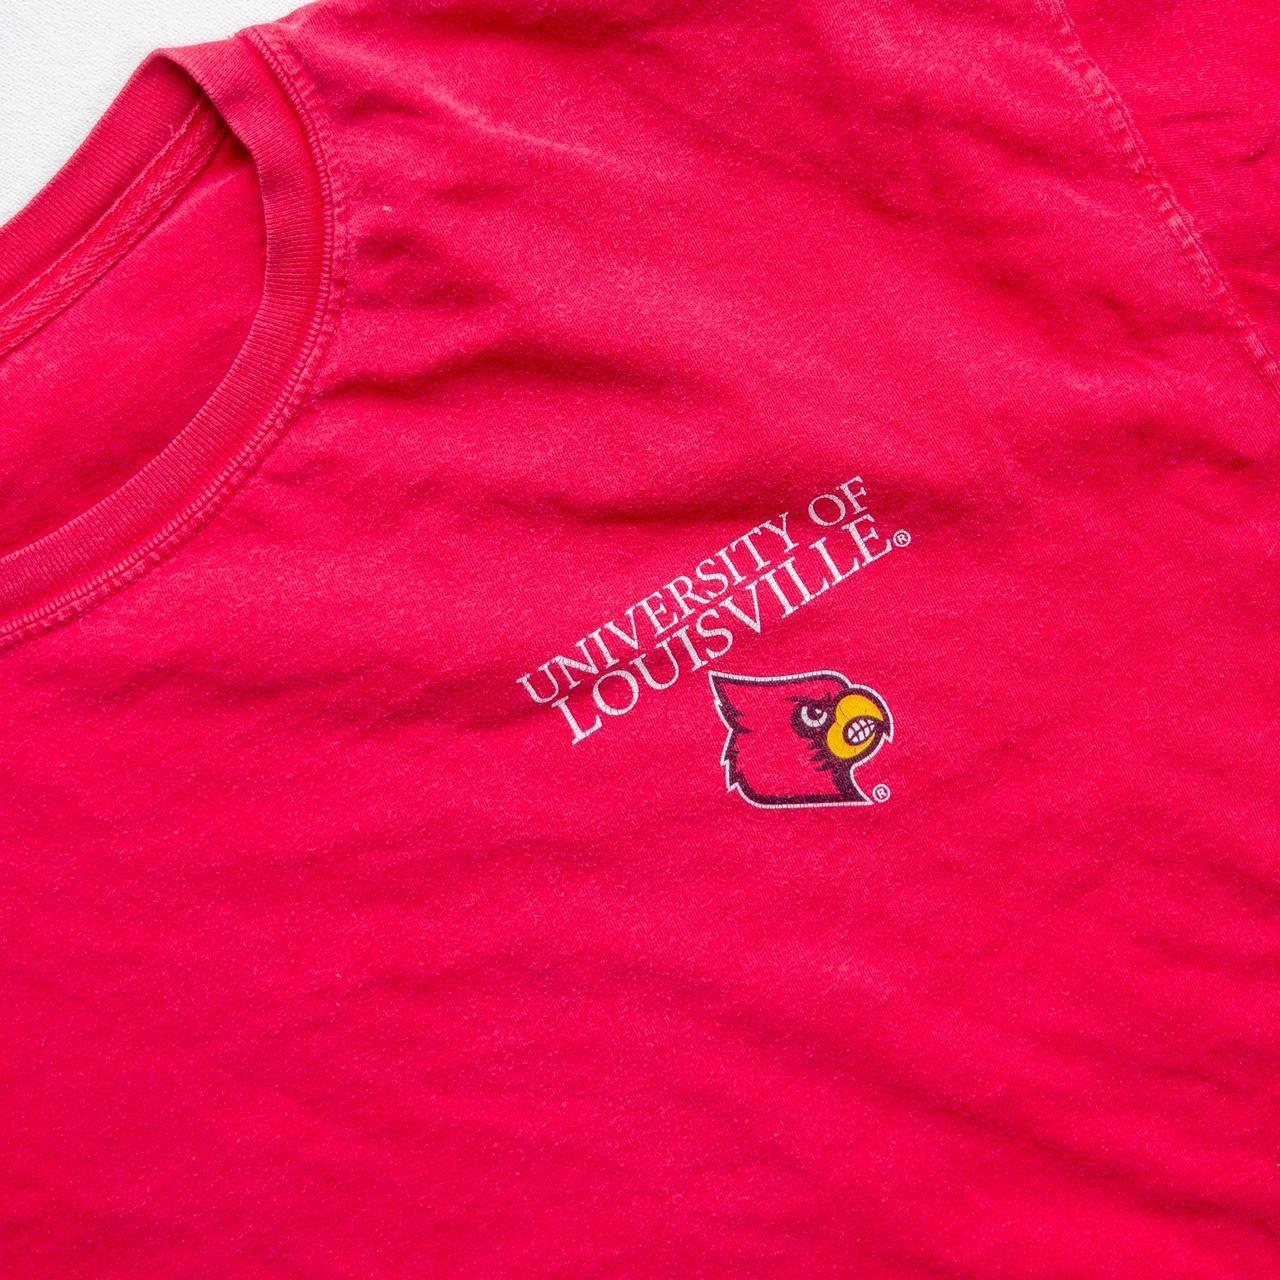 Vintage Louisville Cardinals t shirt Light wear - Depop